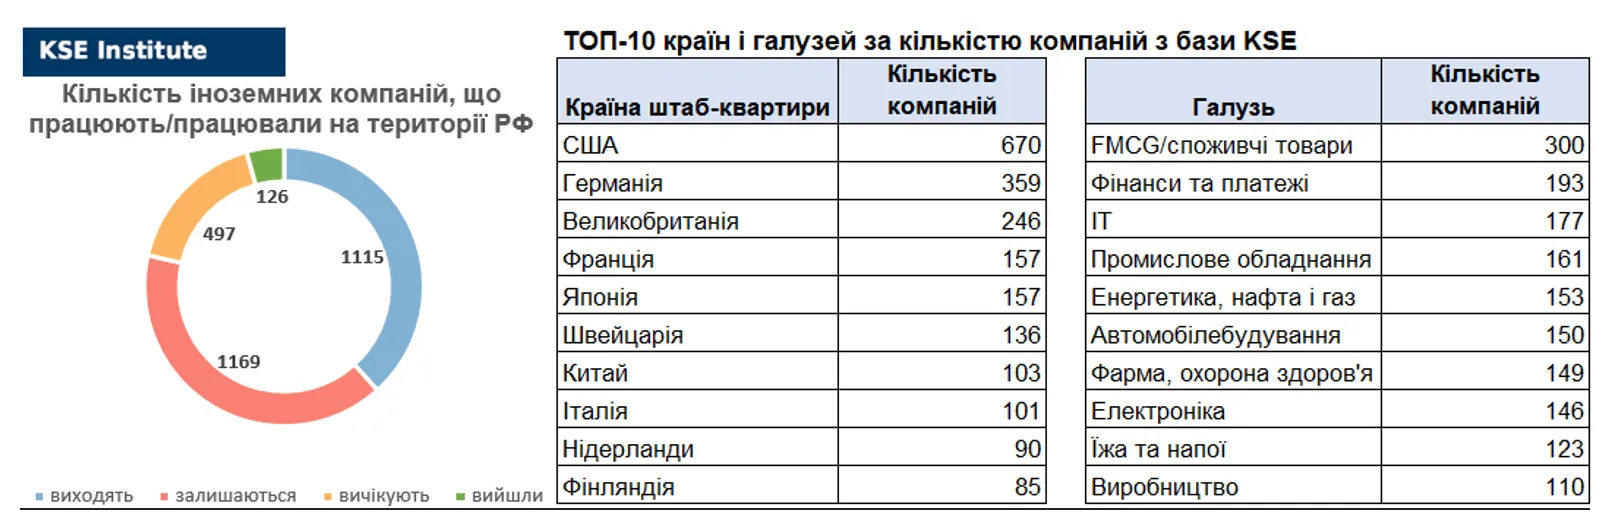 Кількість компаній, яка працює в Росії